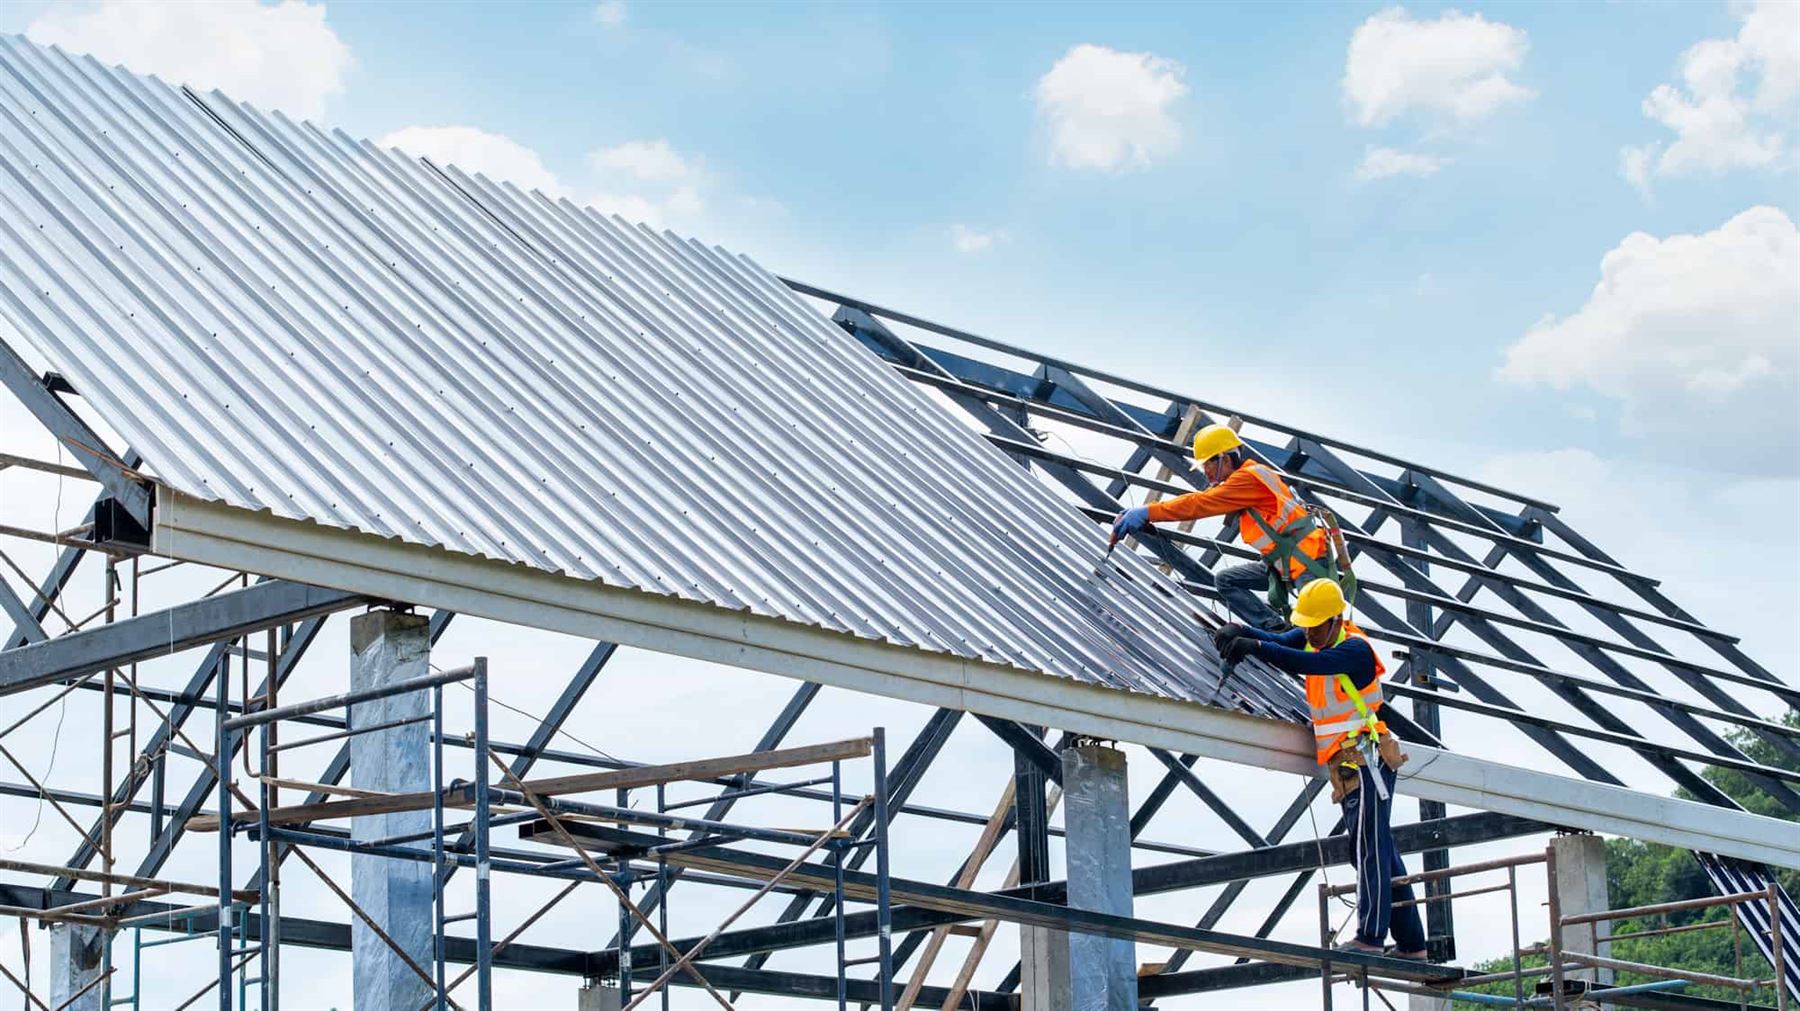 JCR Roofing & Remodeling LLC